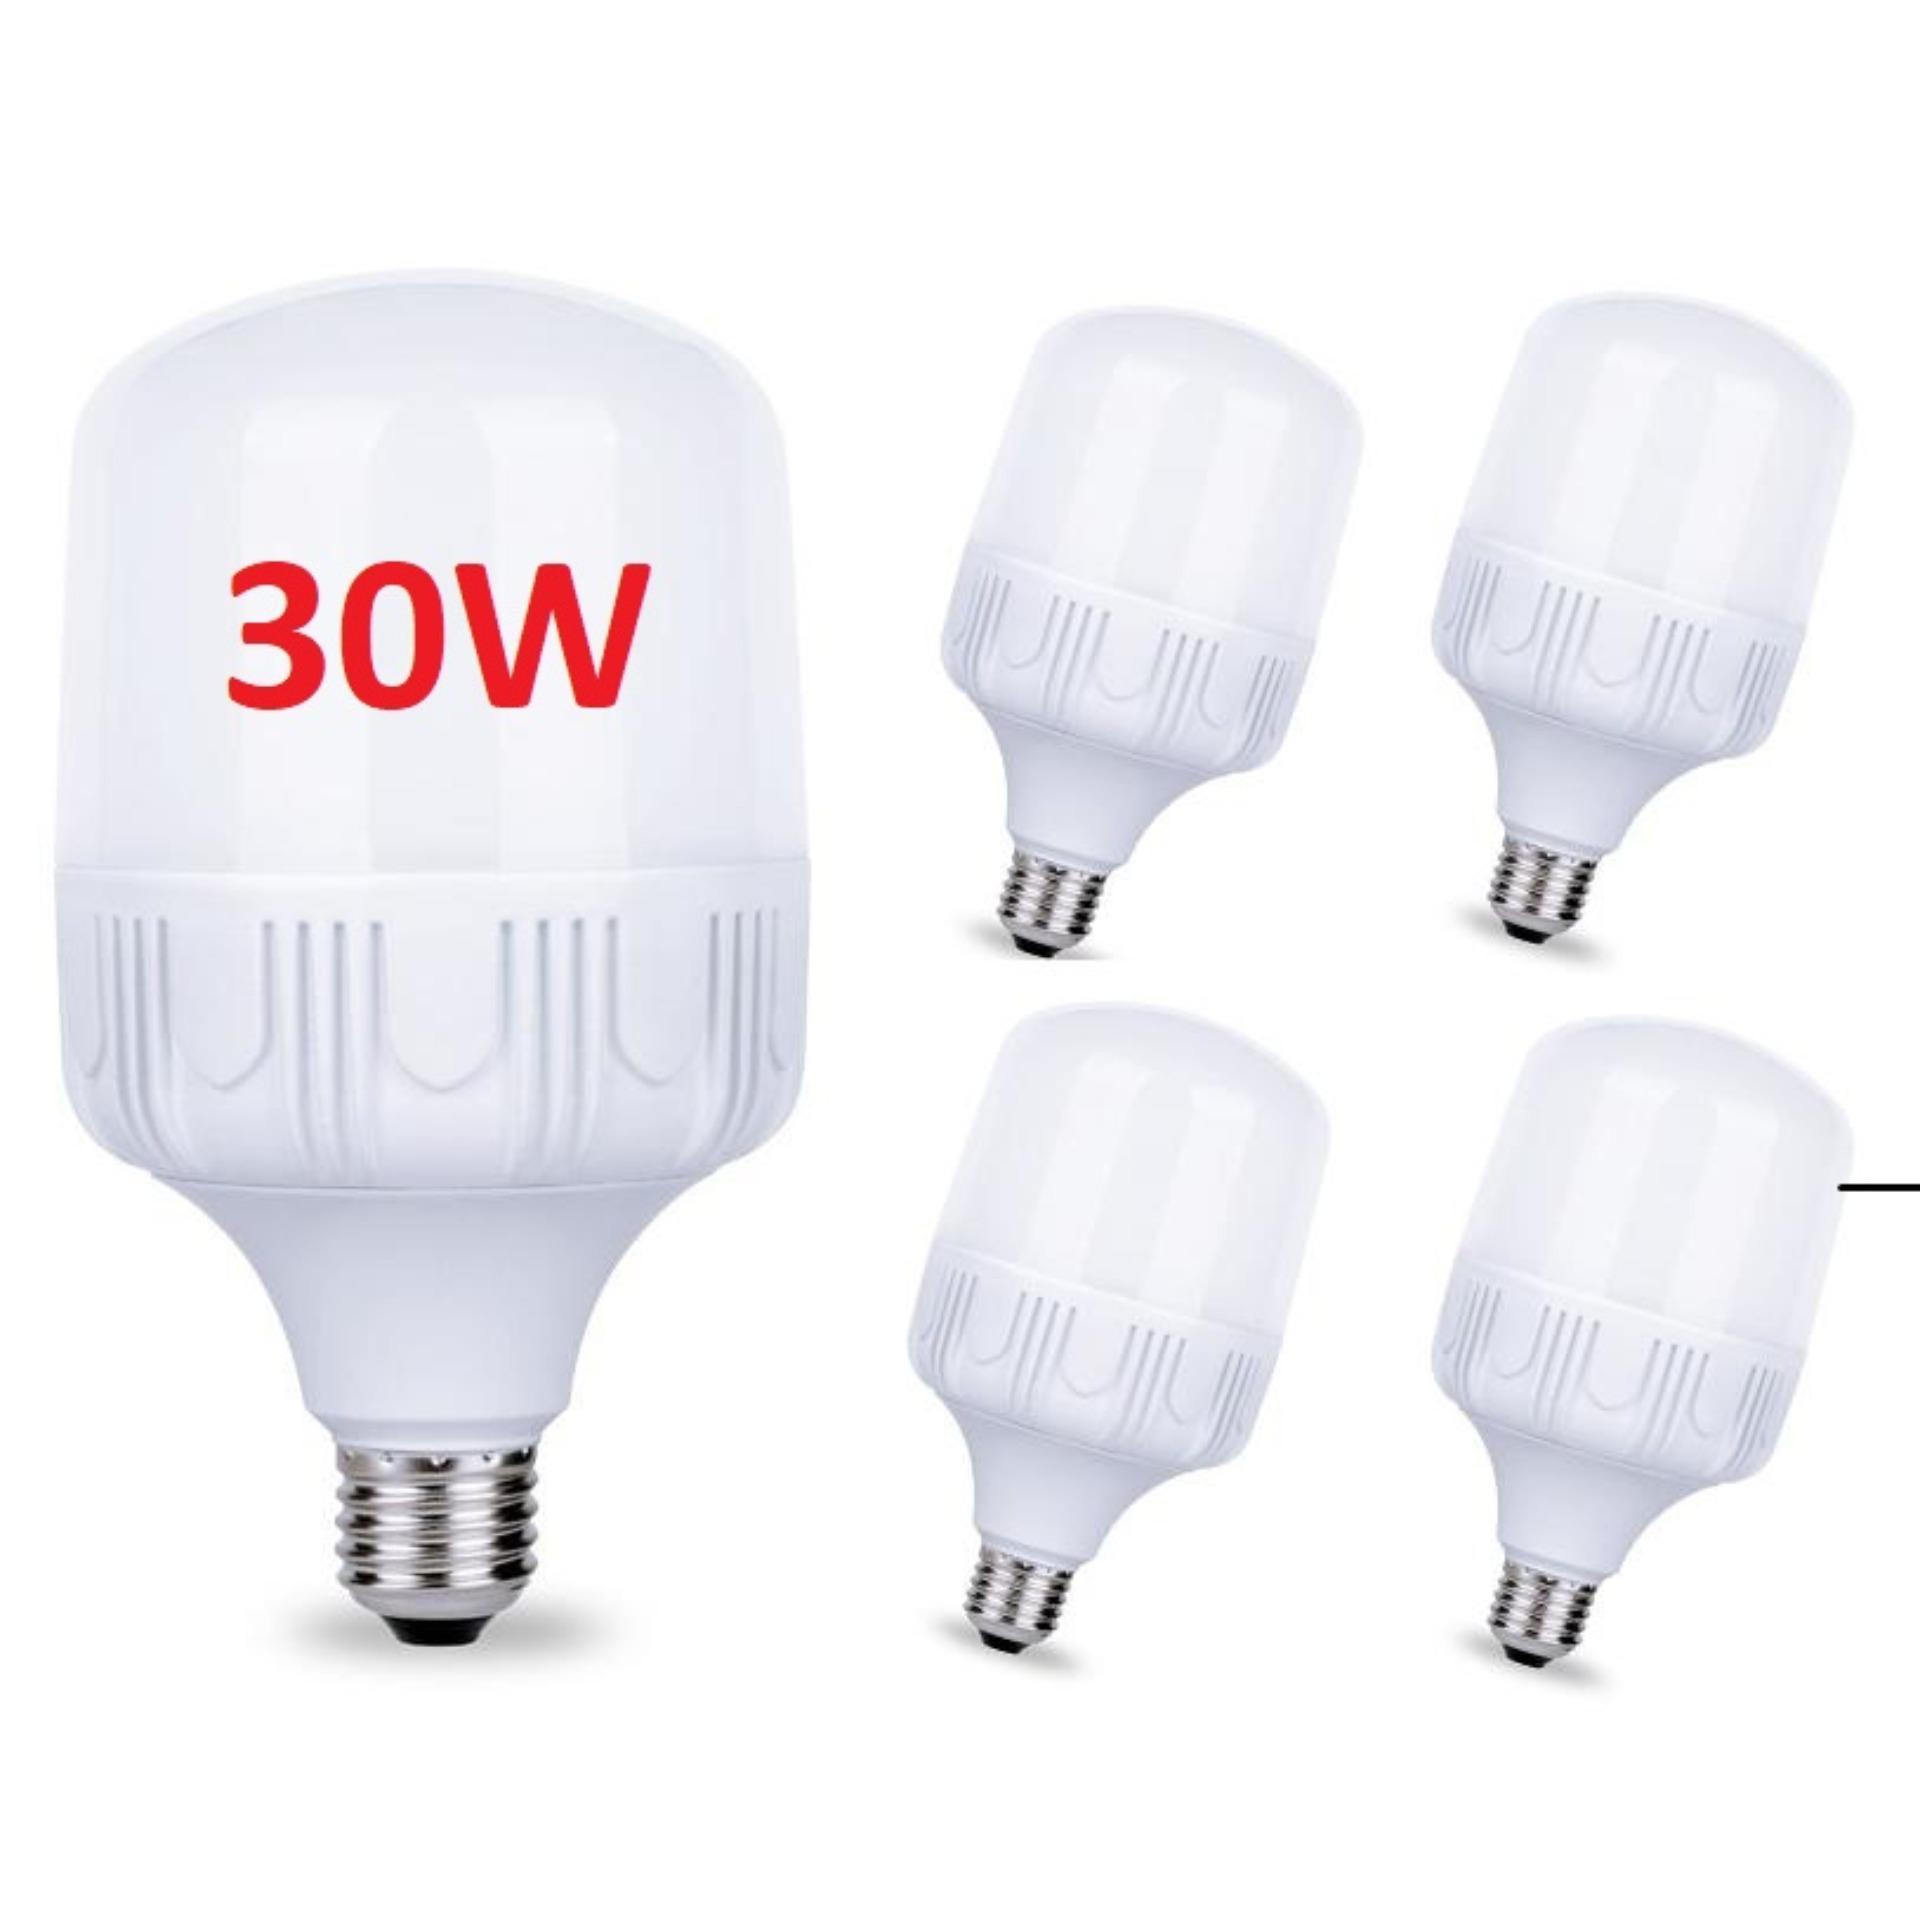 Bộ 5 bóng đèn Led 30W cao cấp tiết kiệm điện. Màu sáng Warm trắng